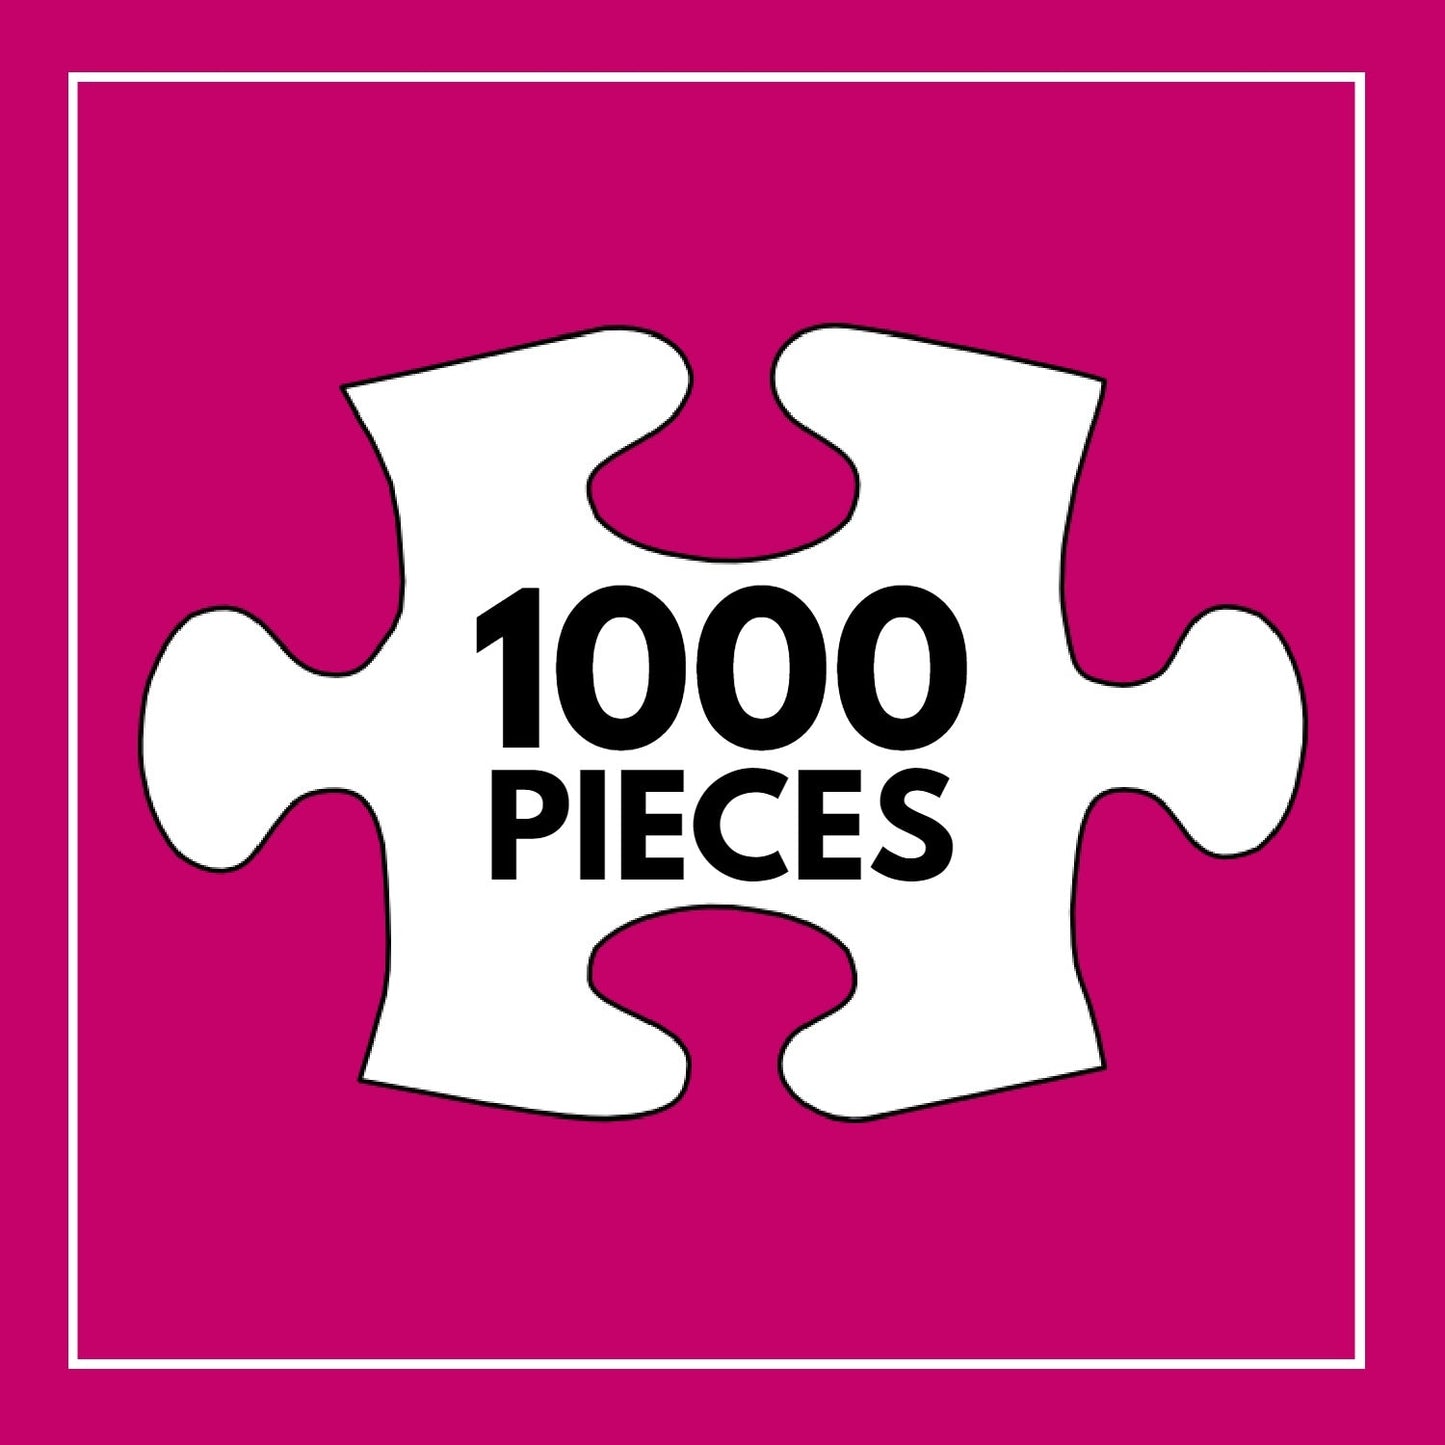 Fantastical Treehouse Escape - 1000 Piece Jigsaw Puzzle